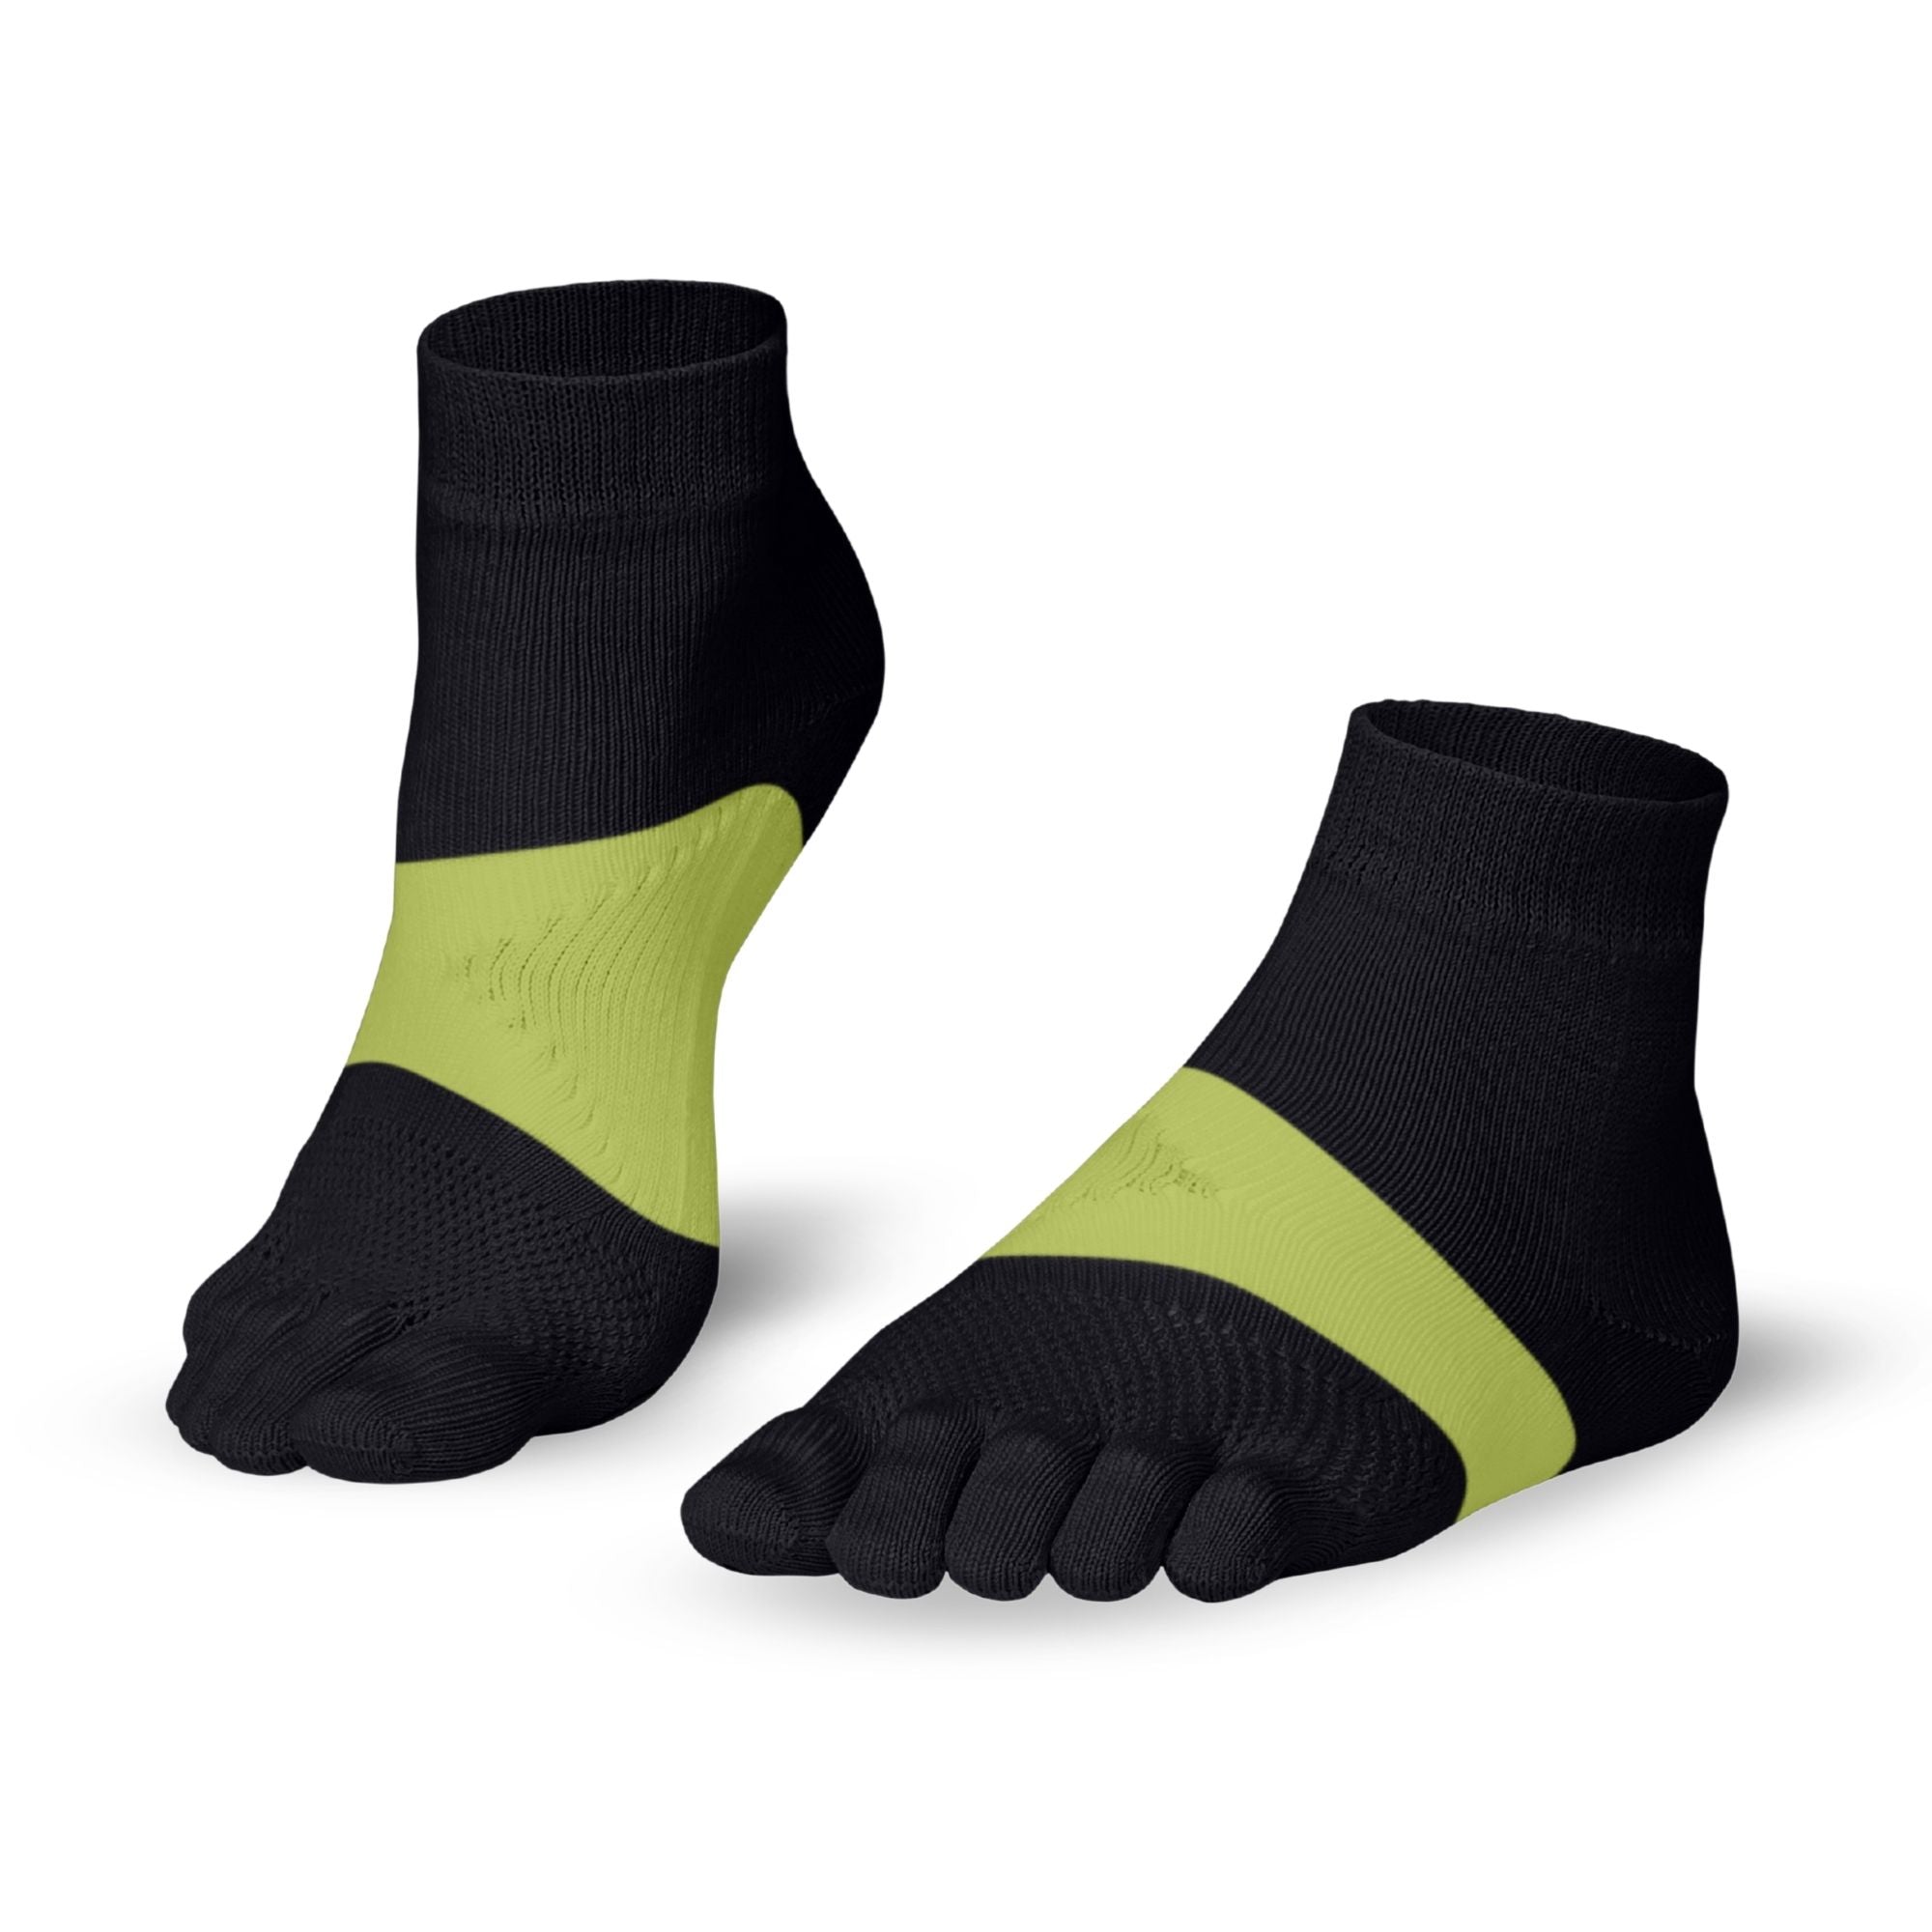 Knitido Marathon chaussettes à orteils pour le sport et les courses de longue distance - noir / vert